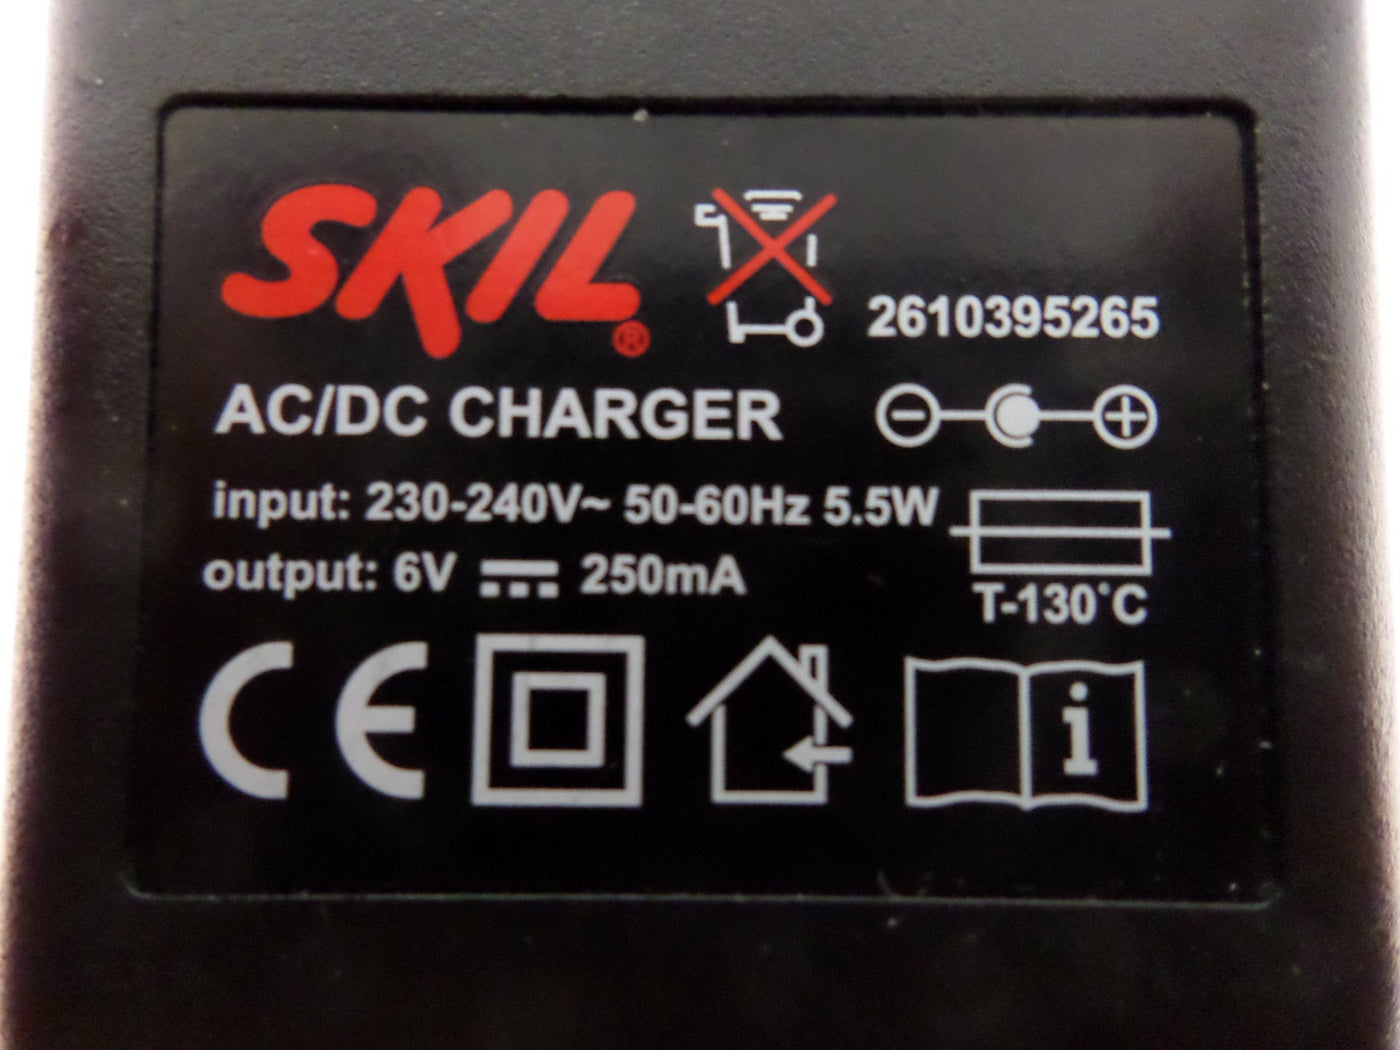 PR25796_2610395265_Skil AC/DC Charger 6V - Image3